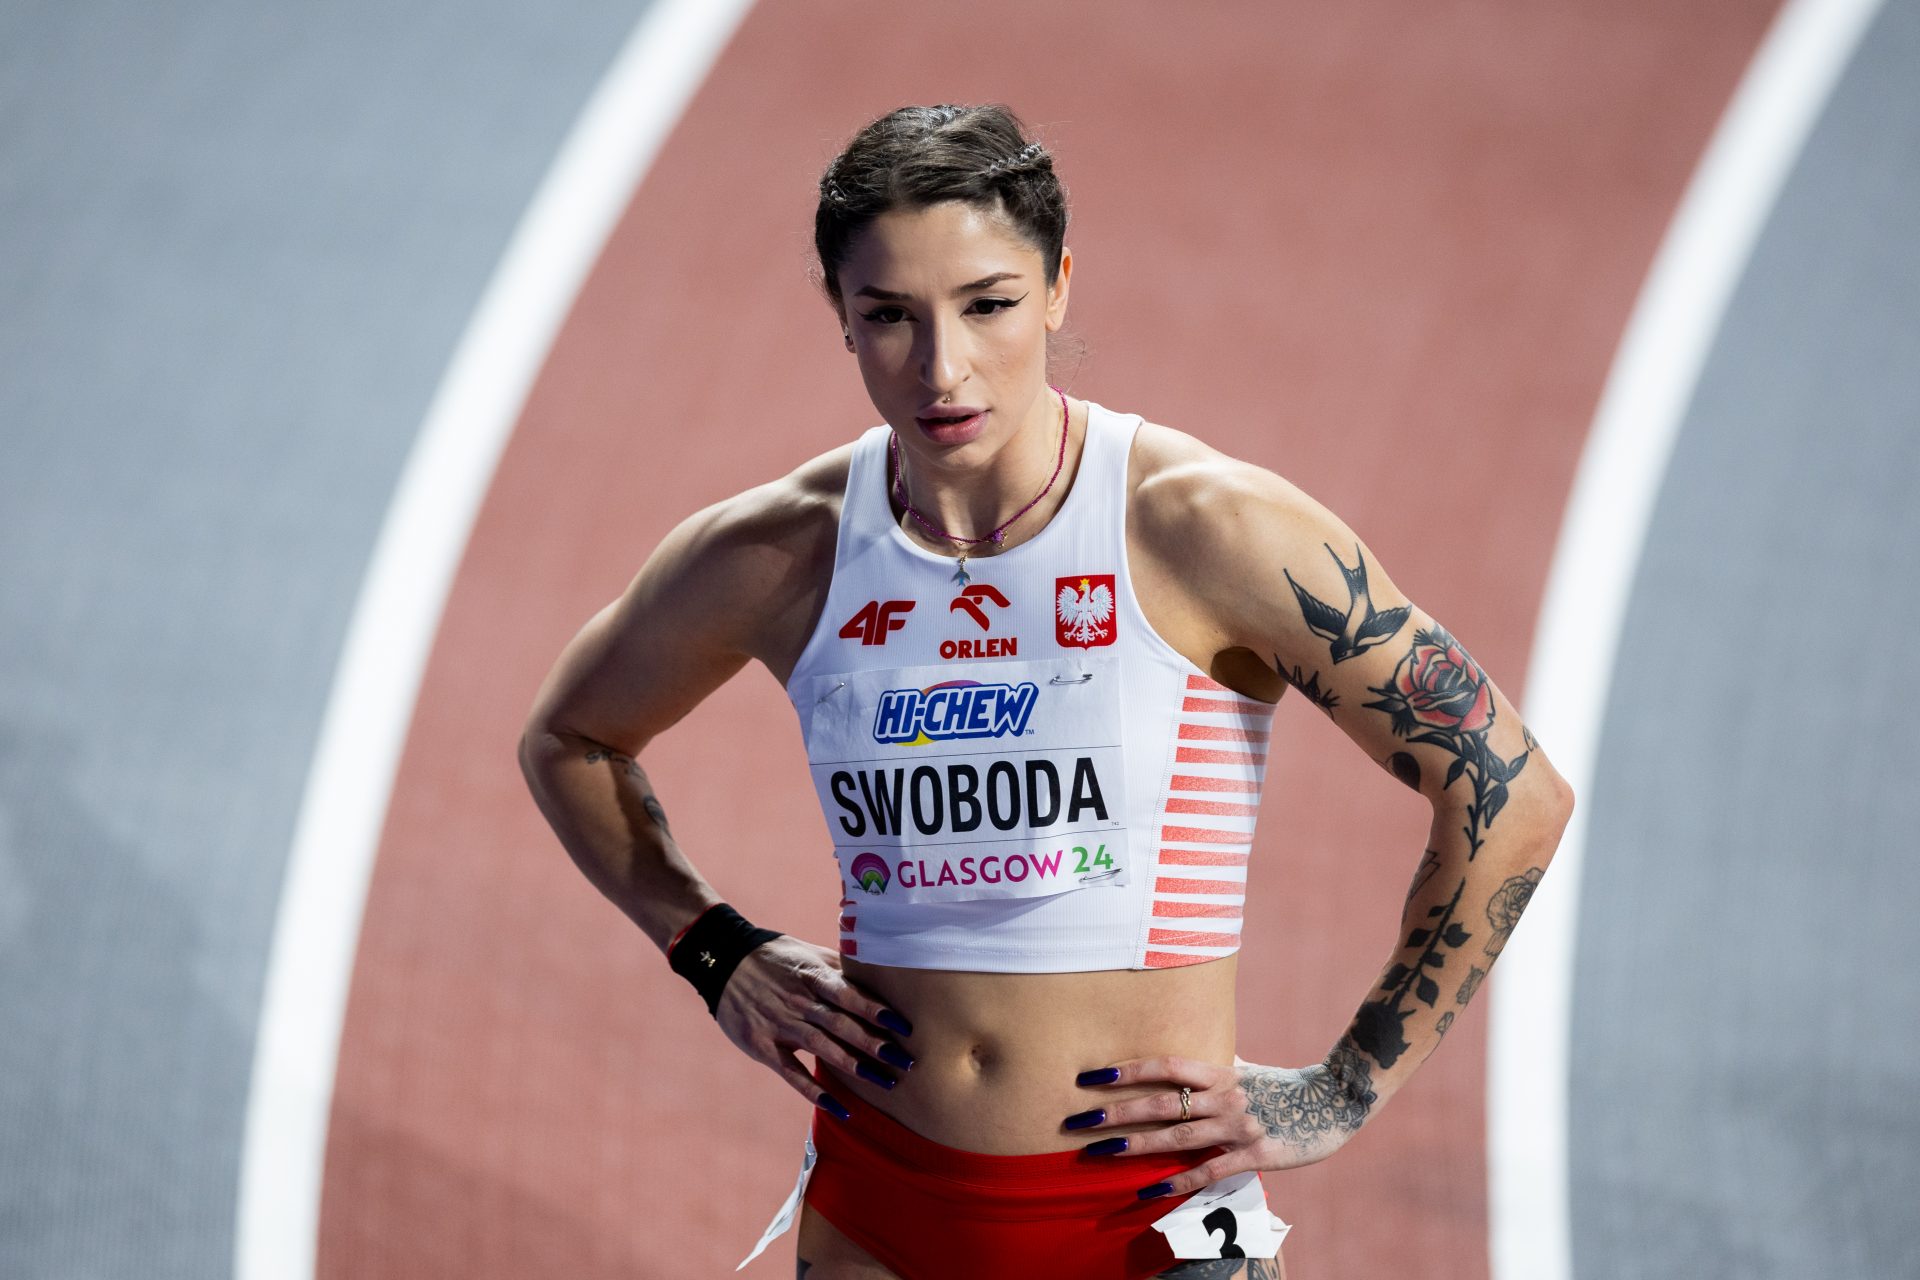 La velocista polacca diventata un fenomeno di Instagram: chi è Ewa Swoboda